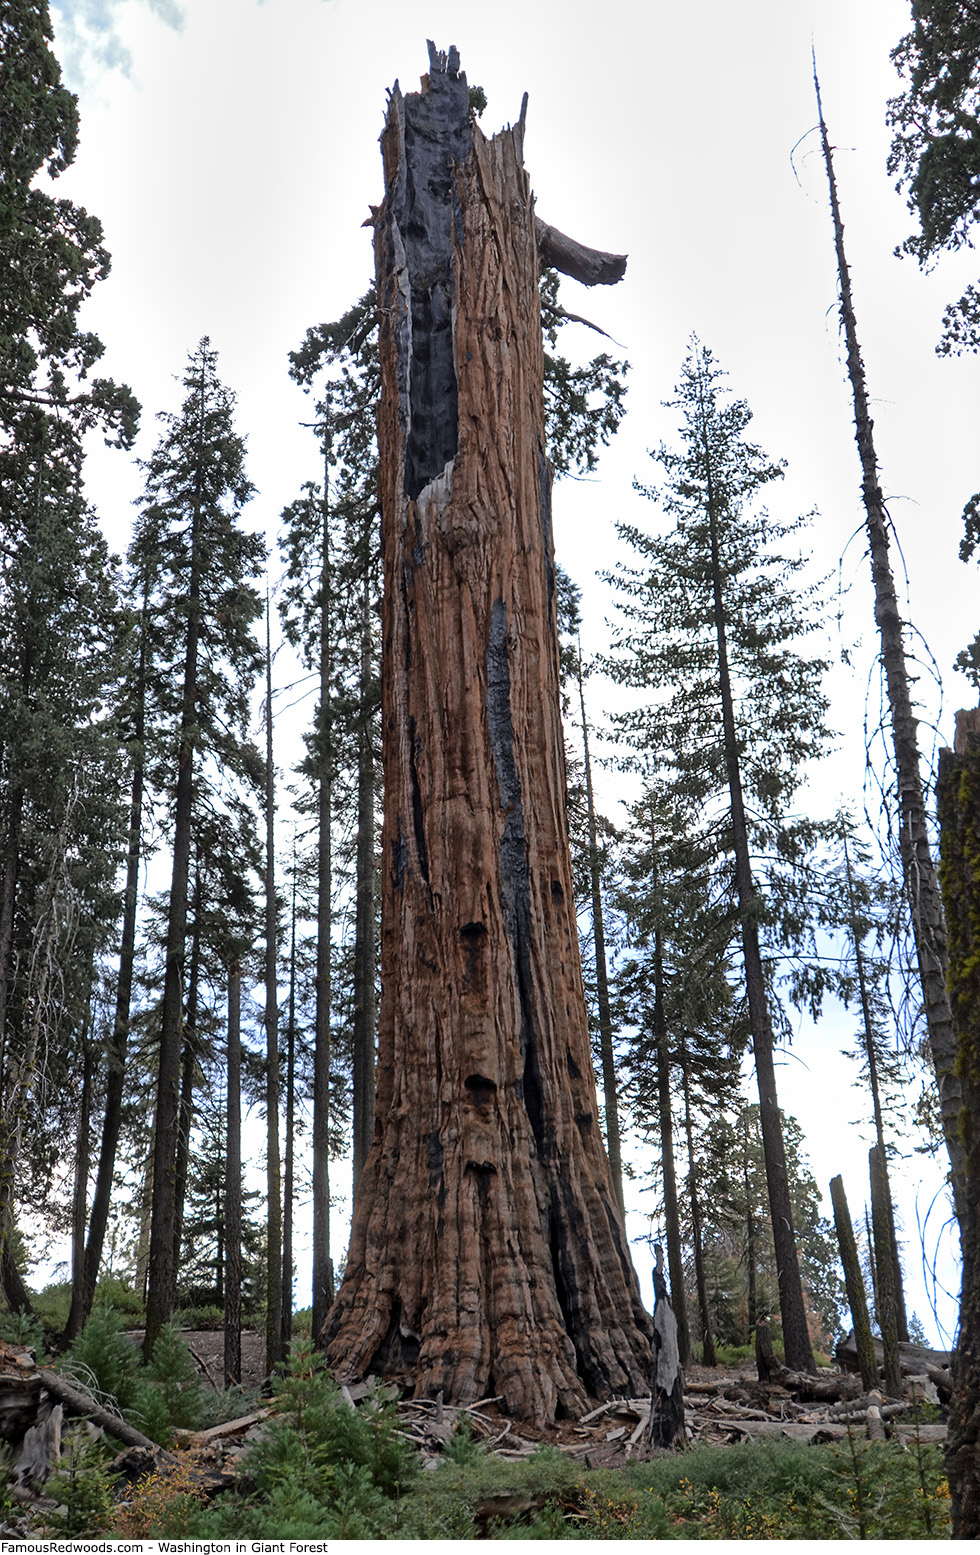 Giant Forest - Washington Tree